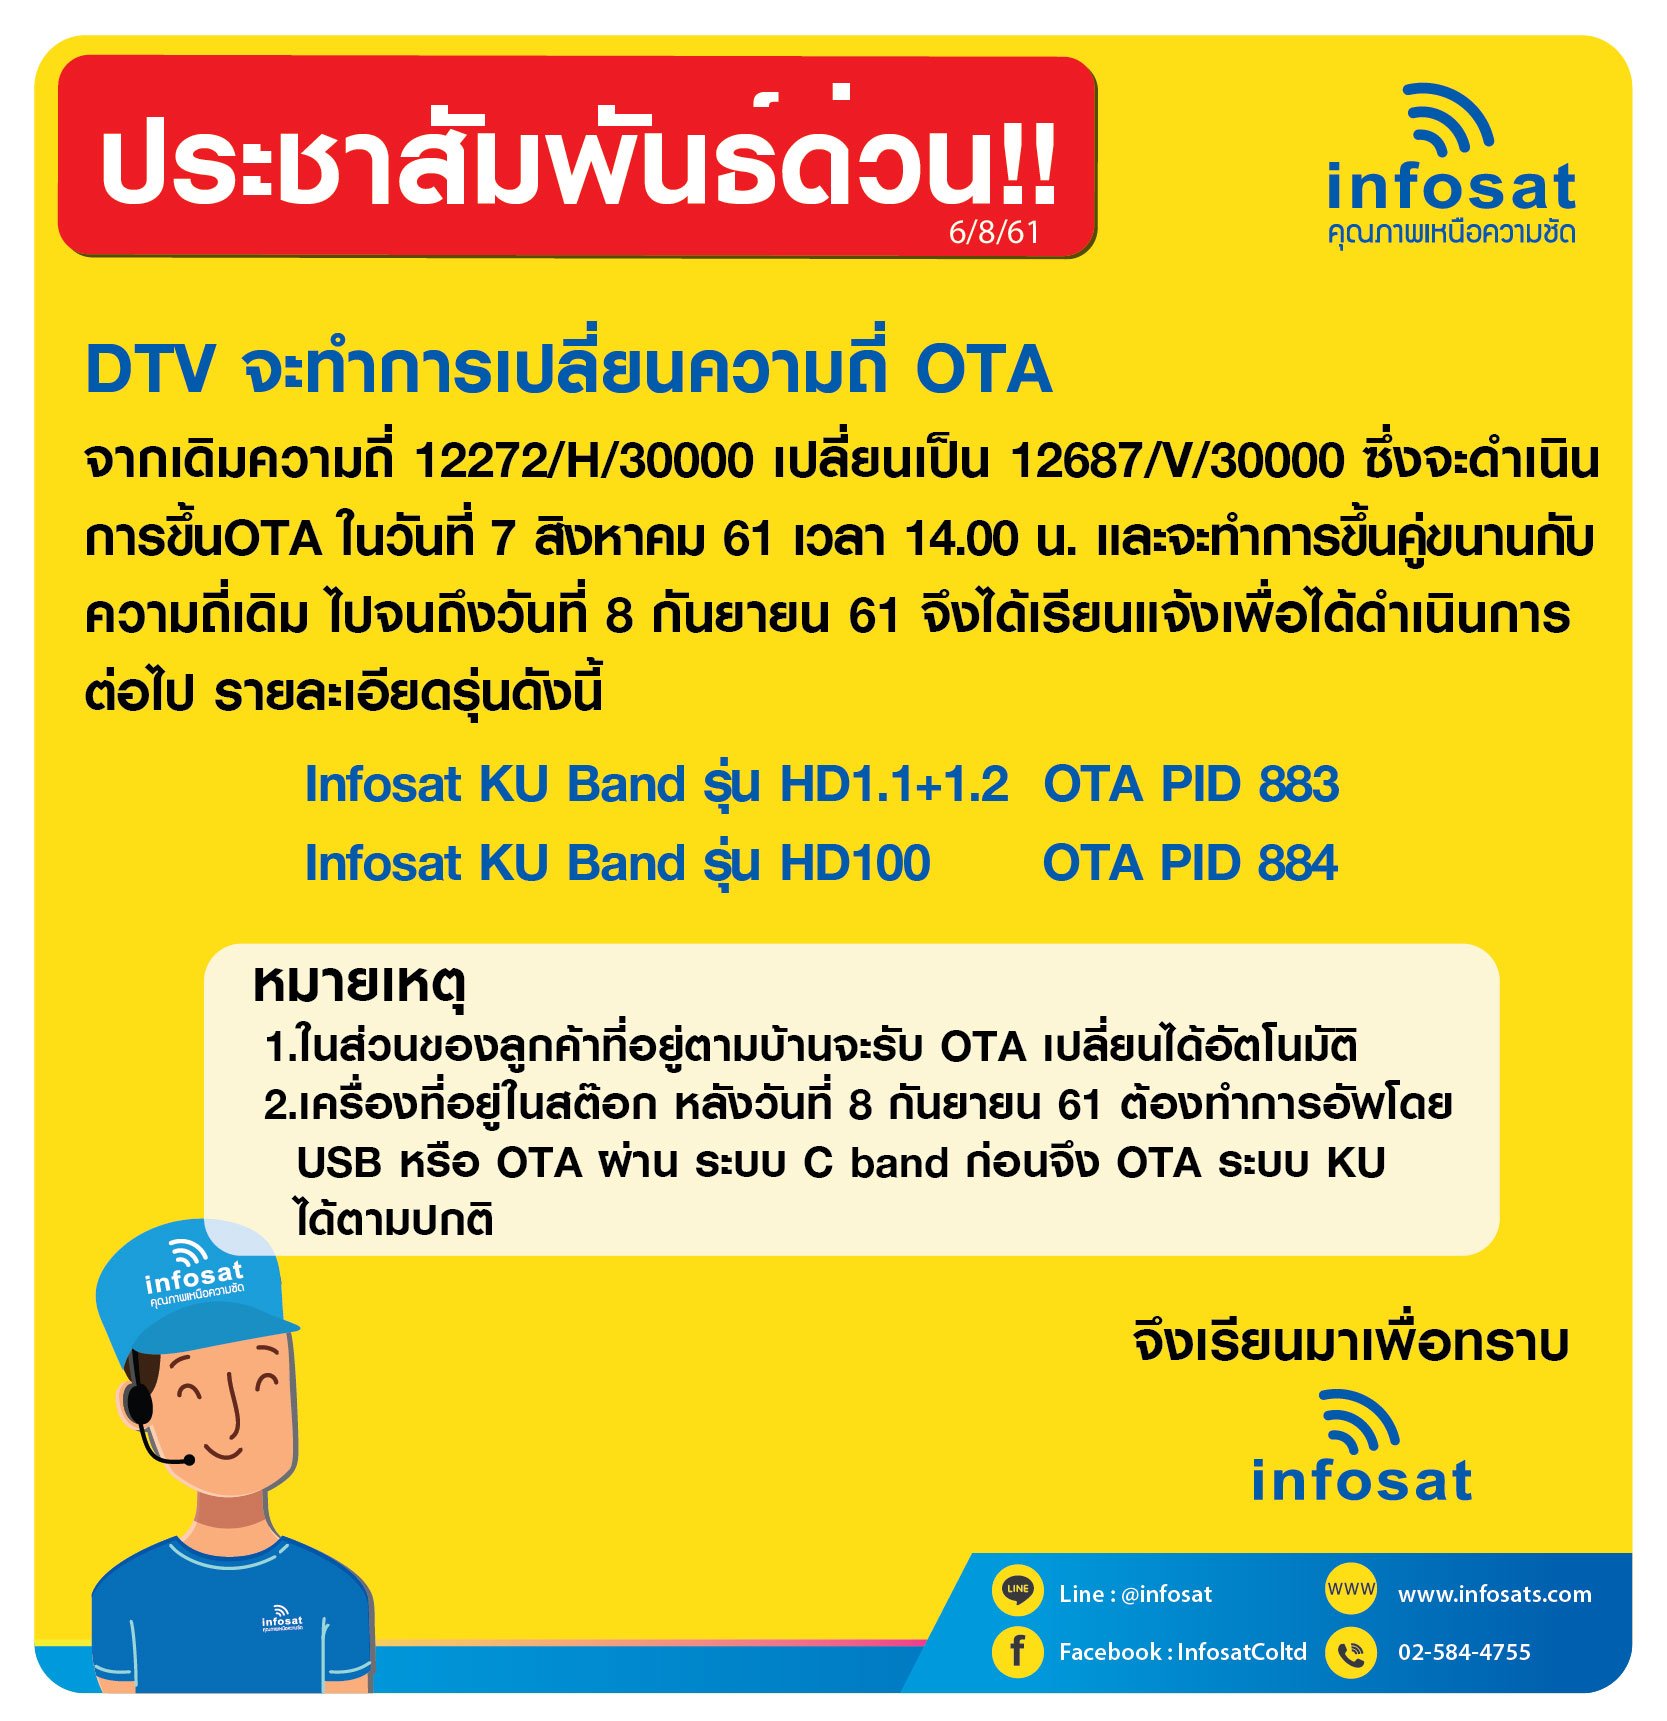 DTV จะทำการเปลี่ยนความถี่ OTA